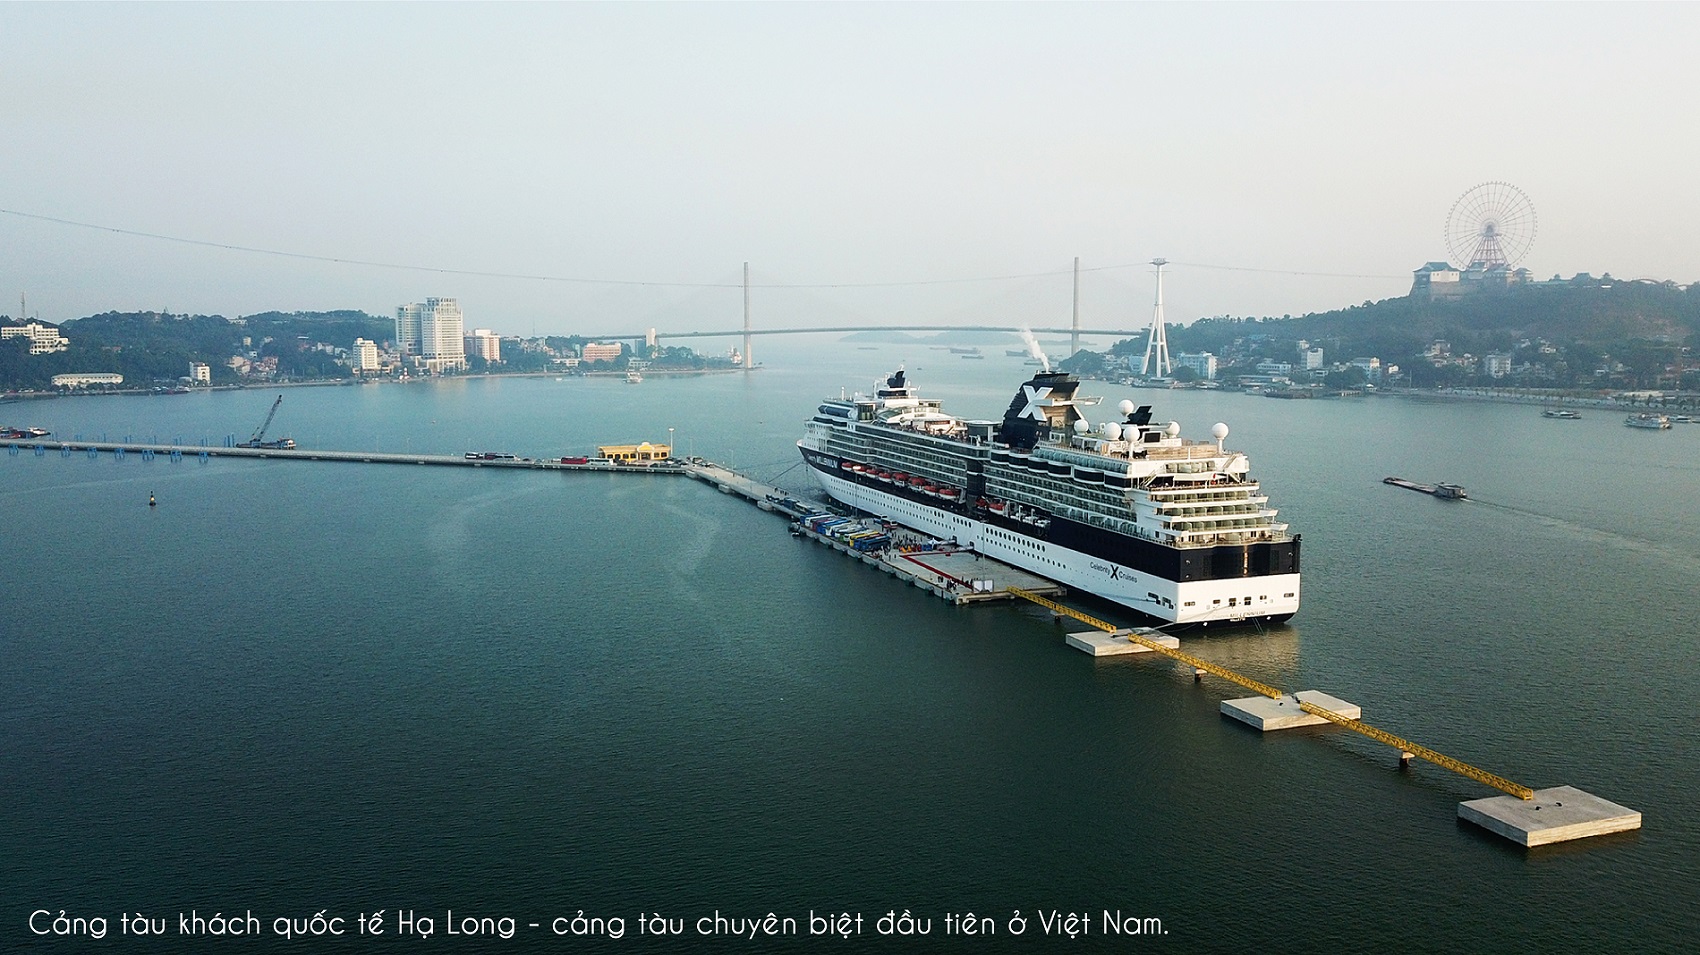 Cảng tàu khách du lịch quốc tế Hạ Long đón nhiều tàu biển 5 sao kể từ khi đi vào hoạt động.